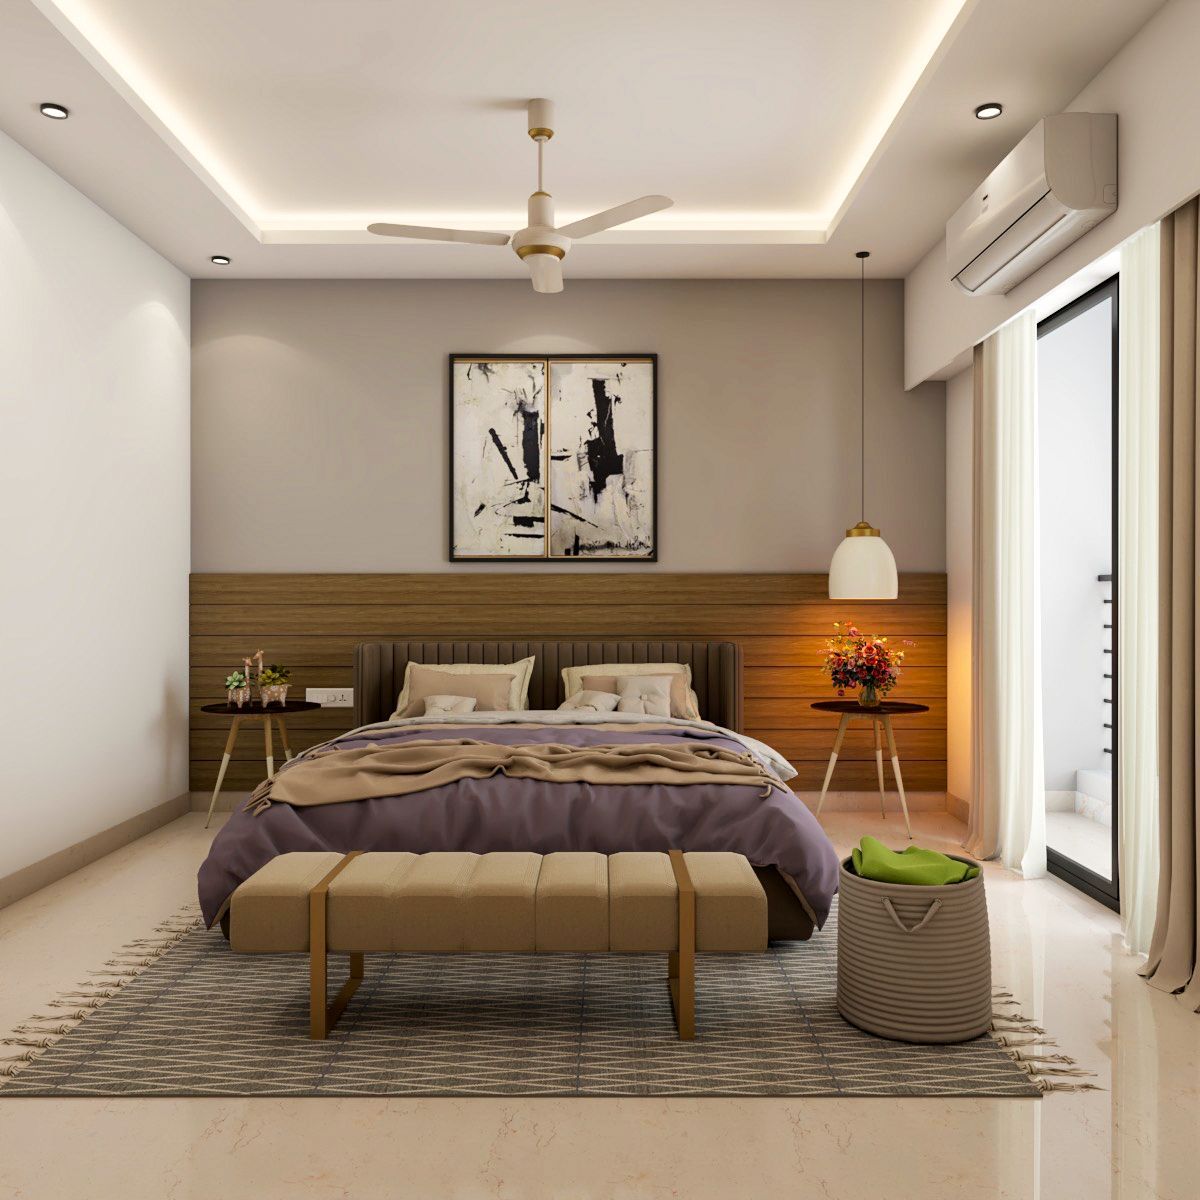 Modern Master Bedroom Design With Brown Upholstered Bed